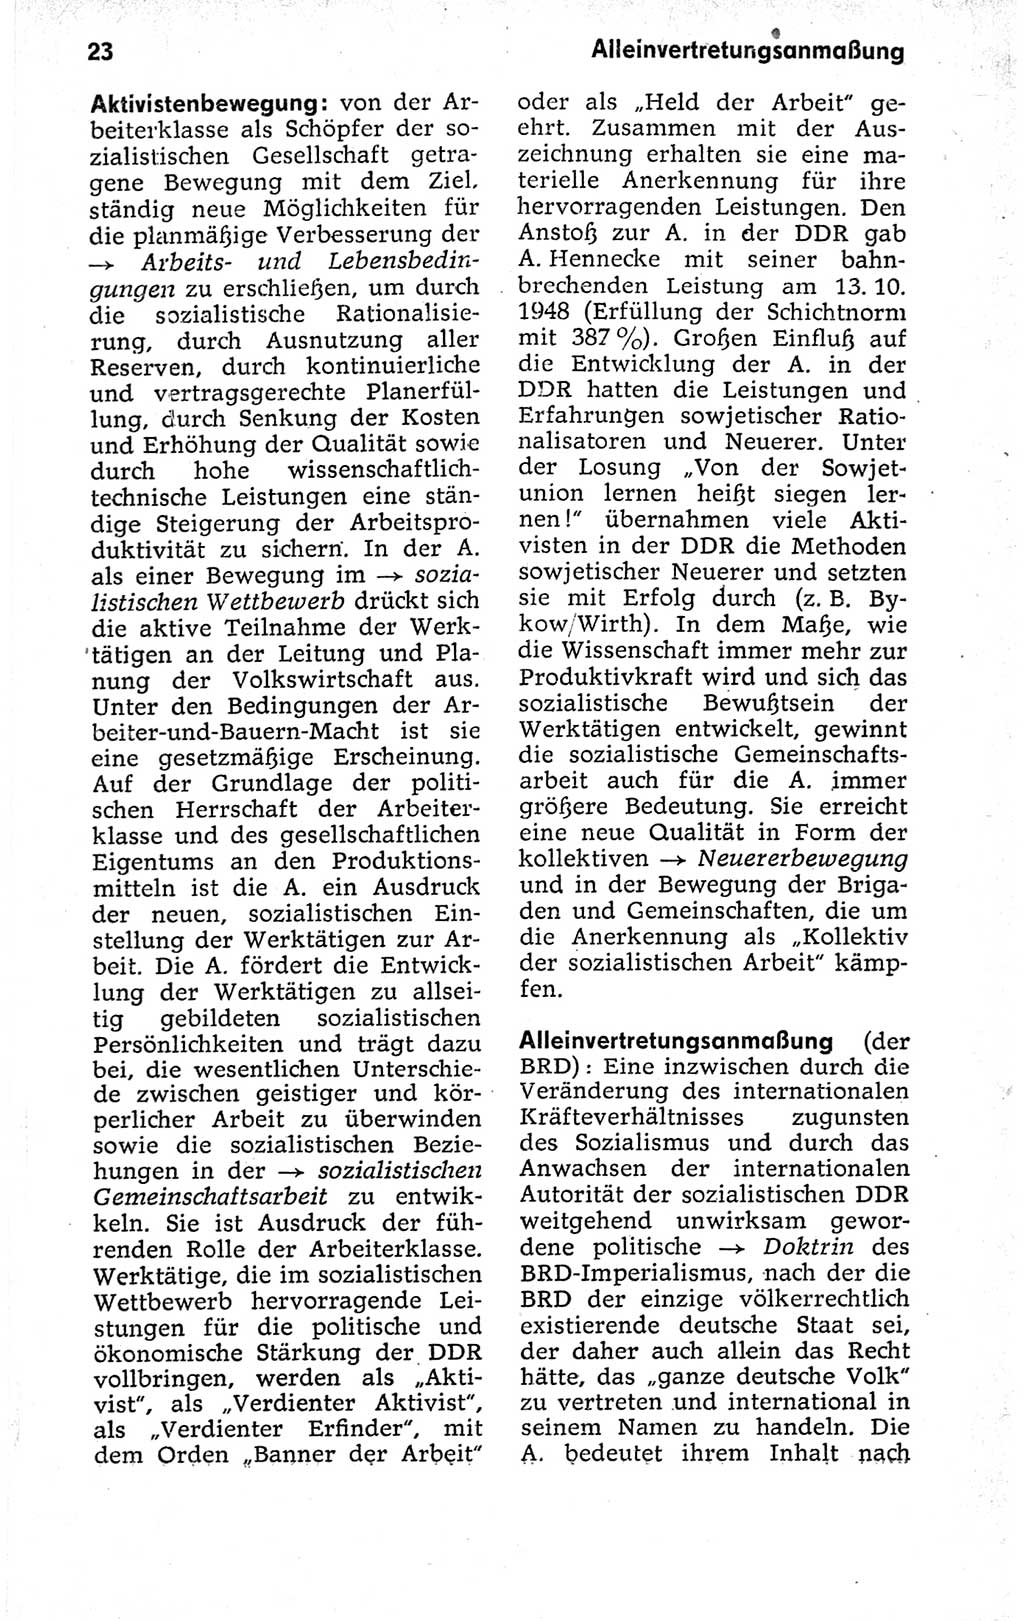 Kleines politisches Wörterbuch [Deutsche Demokratische Republik (DDR)] 1973, Seite 23 (Kl. pol. Wb. DDR 1973, S. 23)